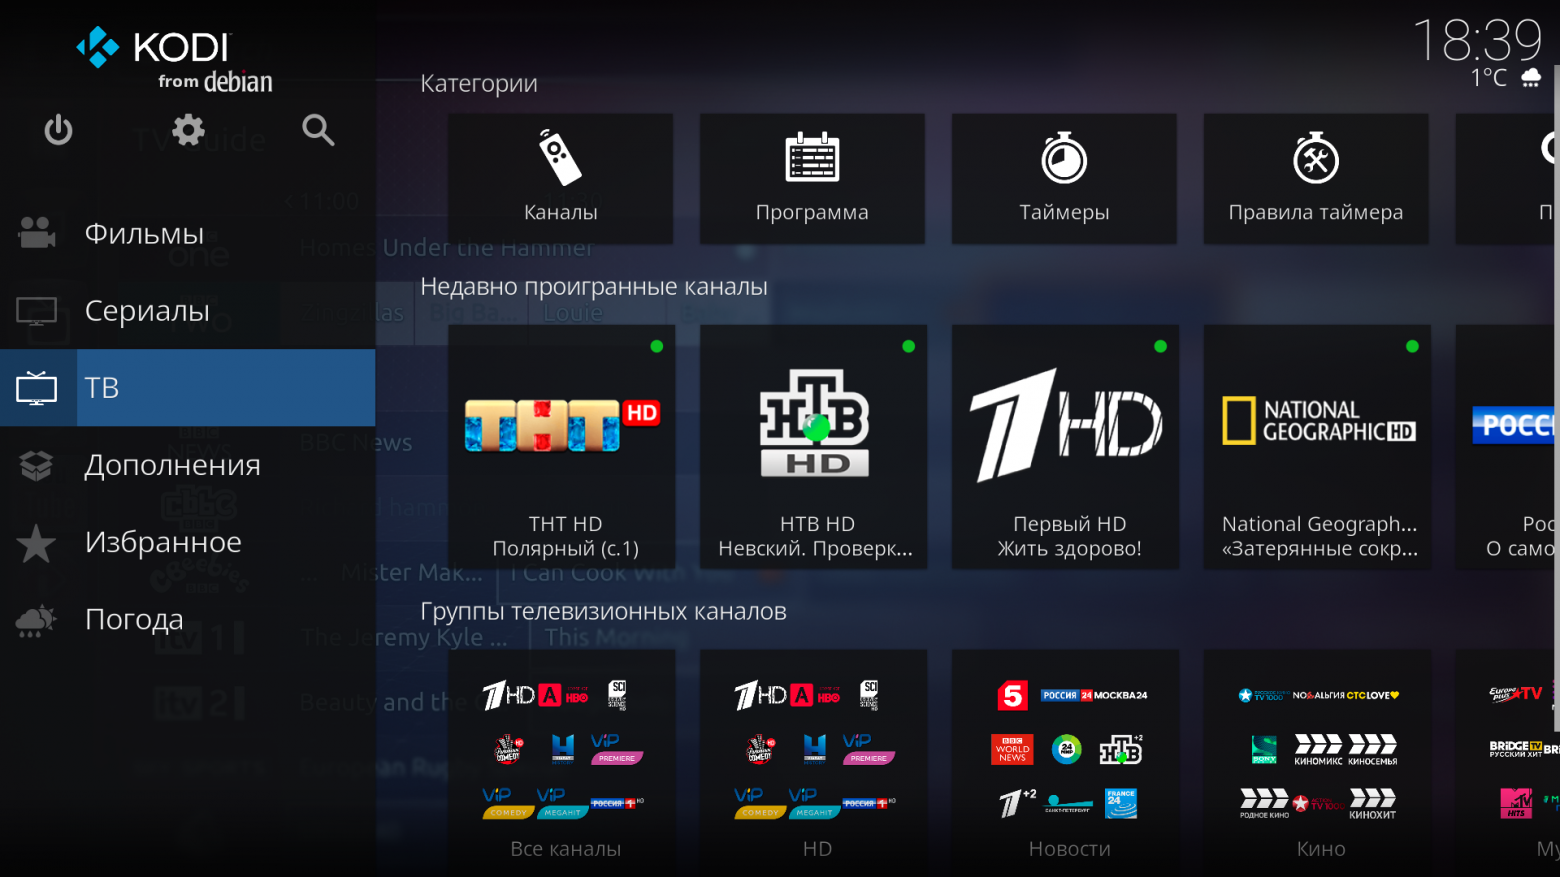 Раздел "ТВ" на главном экране KODI